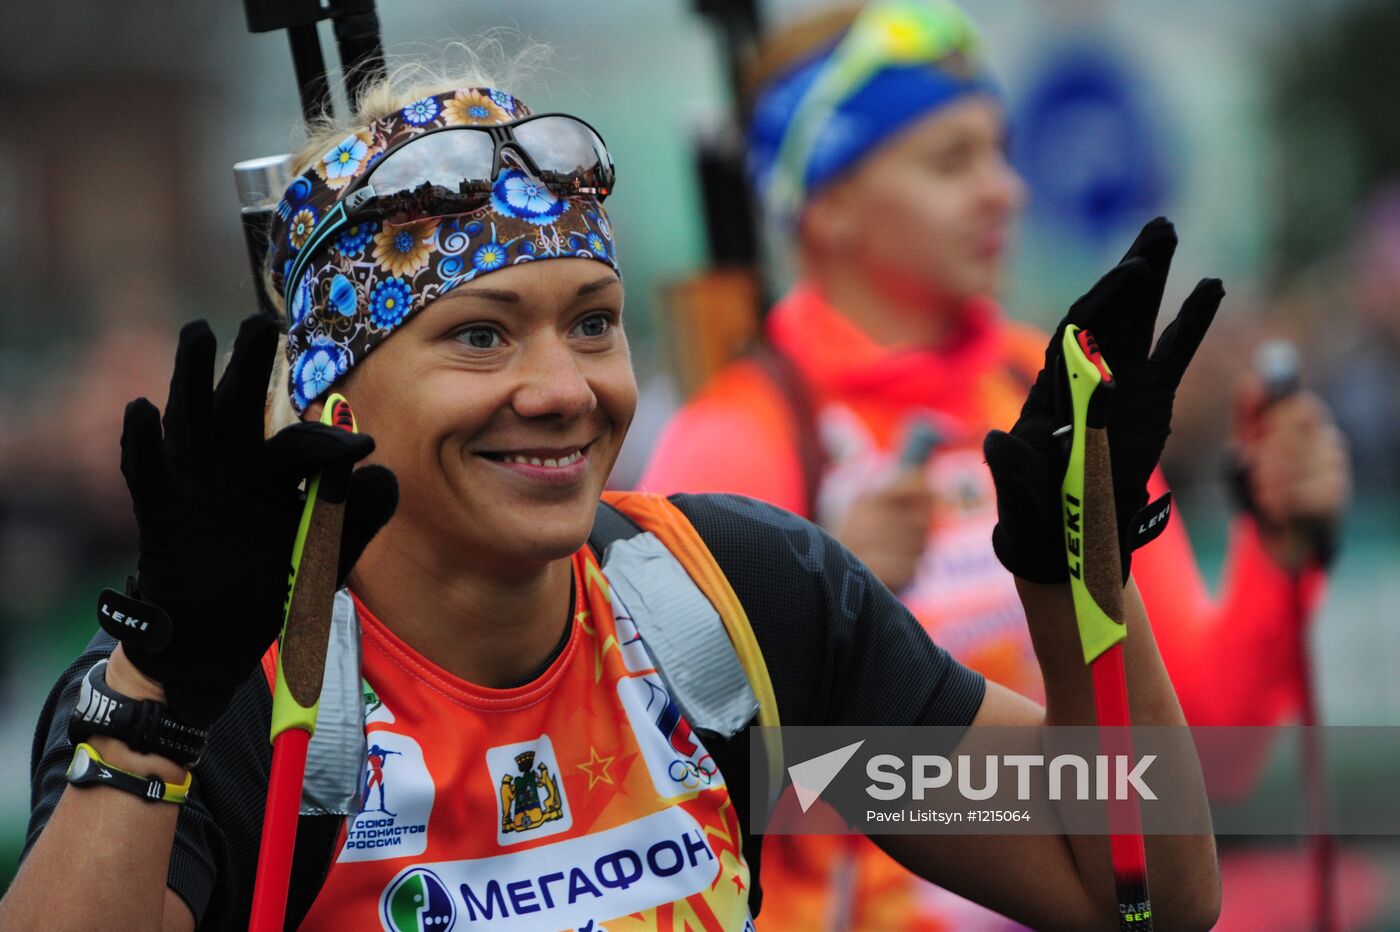 "Stars of biathlon" on City Day in Yekaterinburg